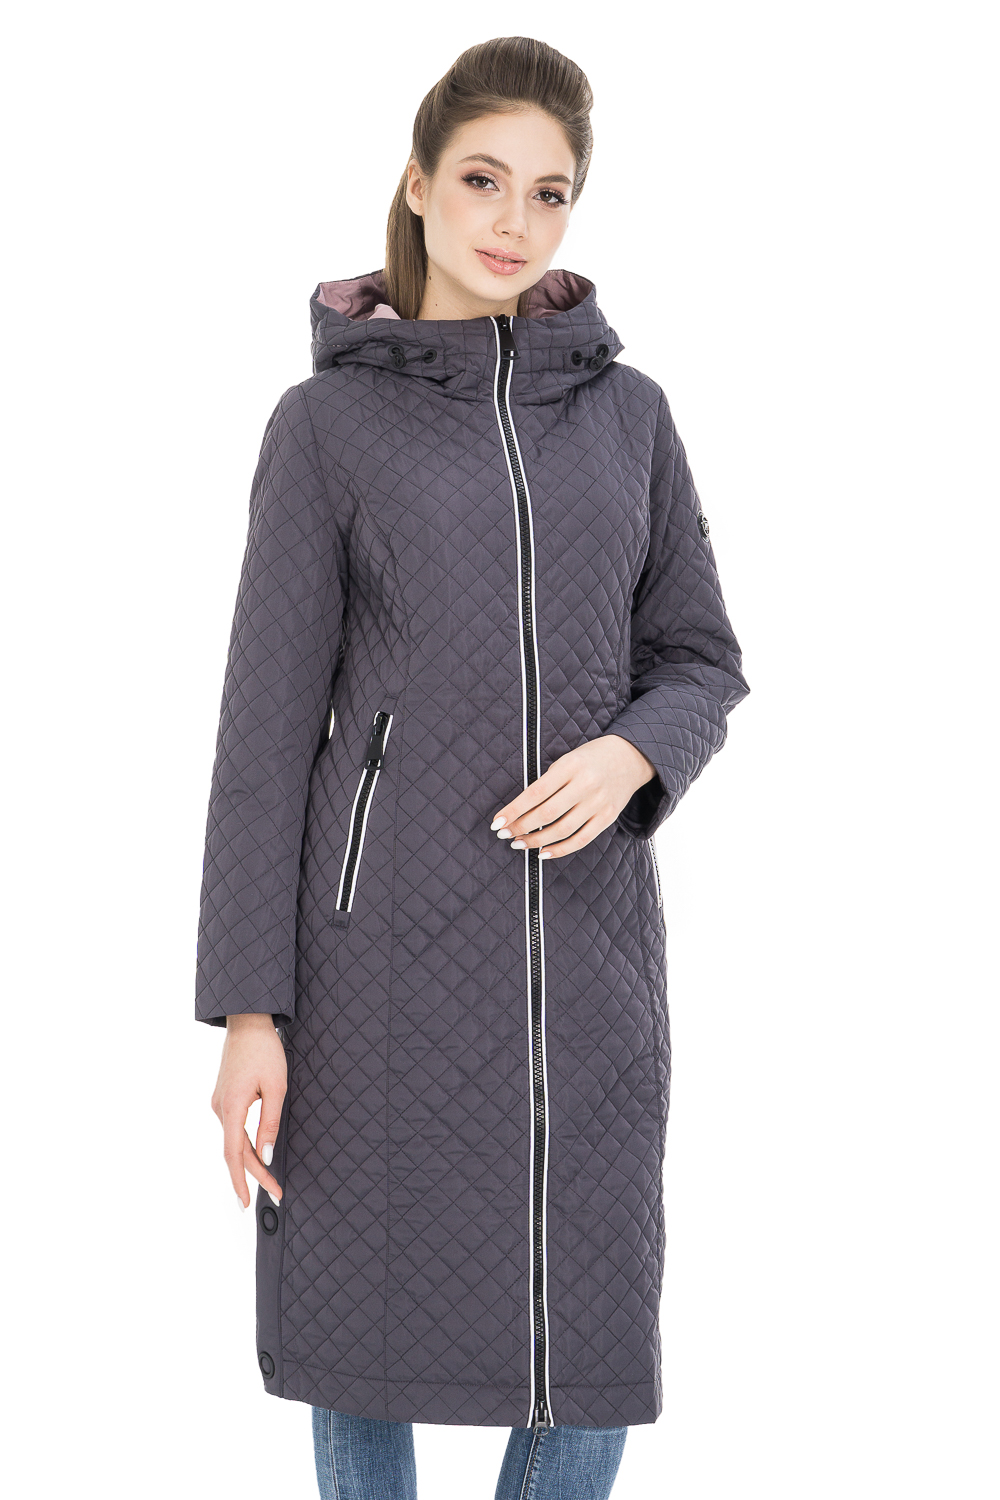 Пальто женское OHARA CC-20901 серое 44 RU